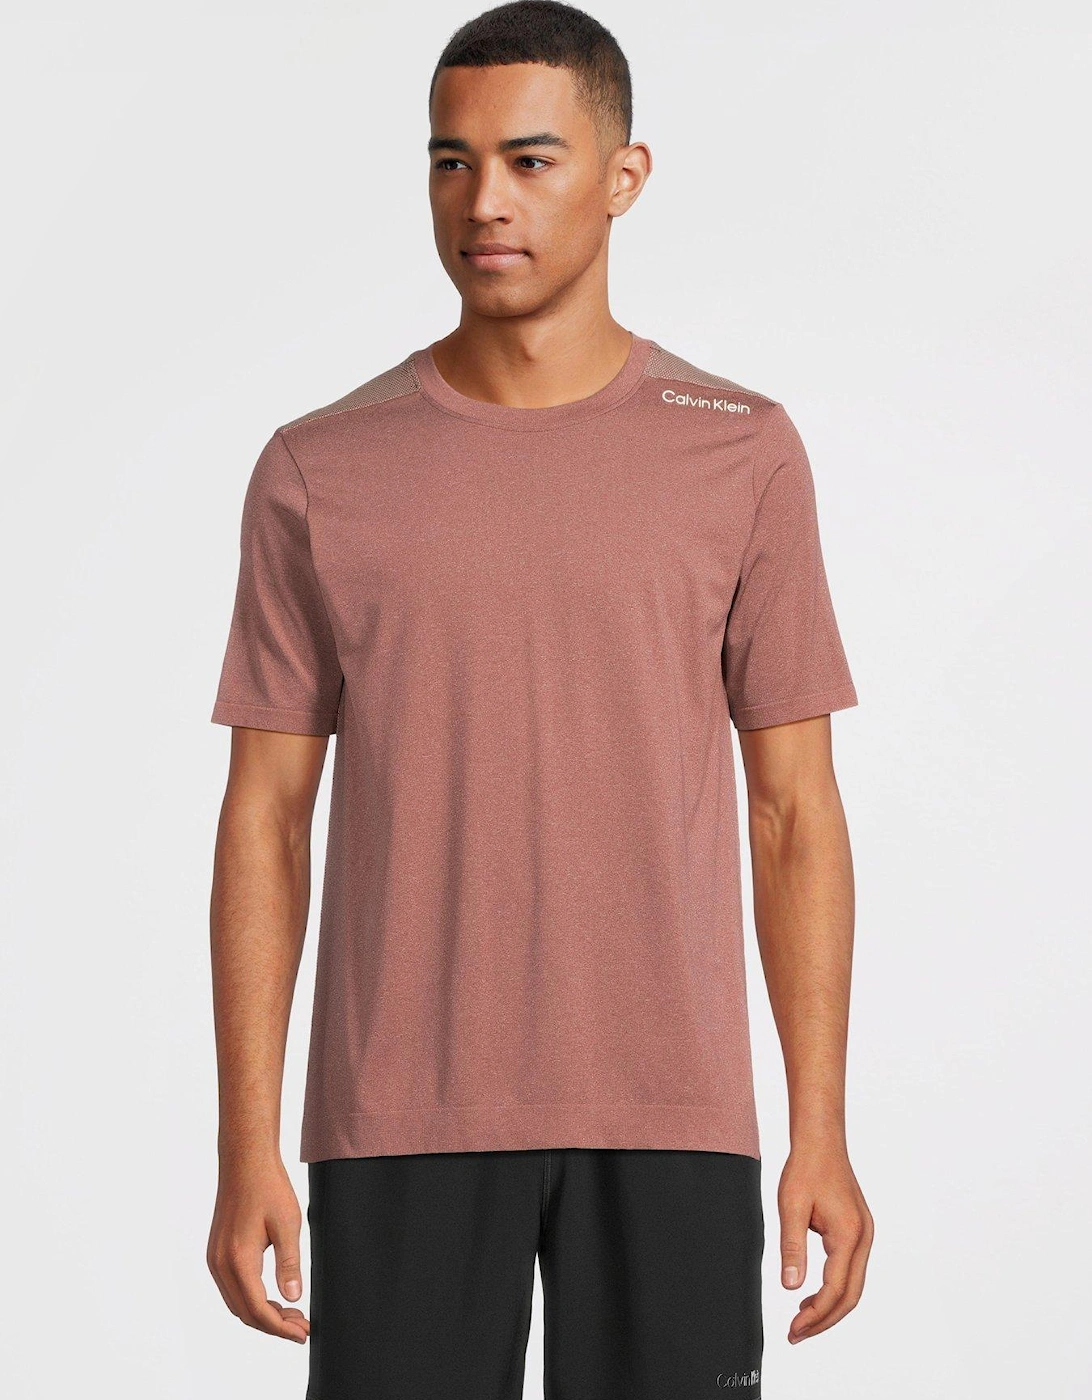 CK Sport Seamless Short Sleeve T-shirt - Mauve, 6 of 5